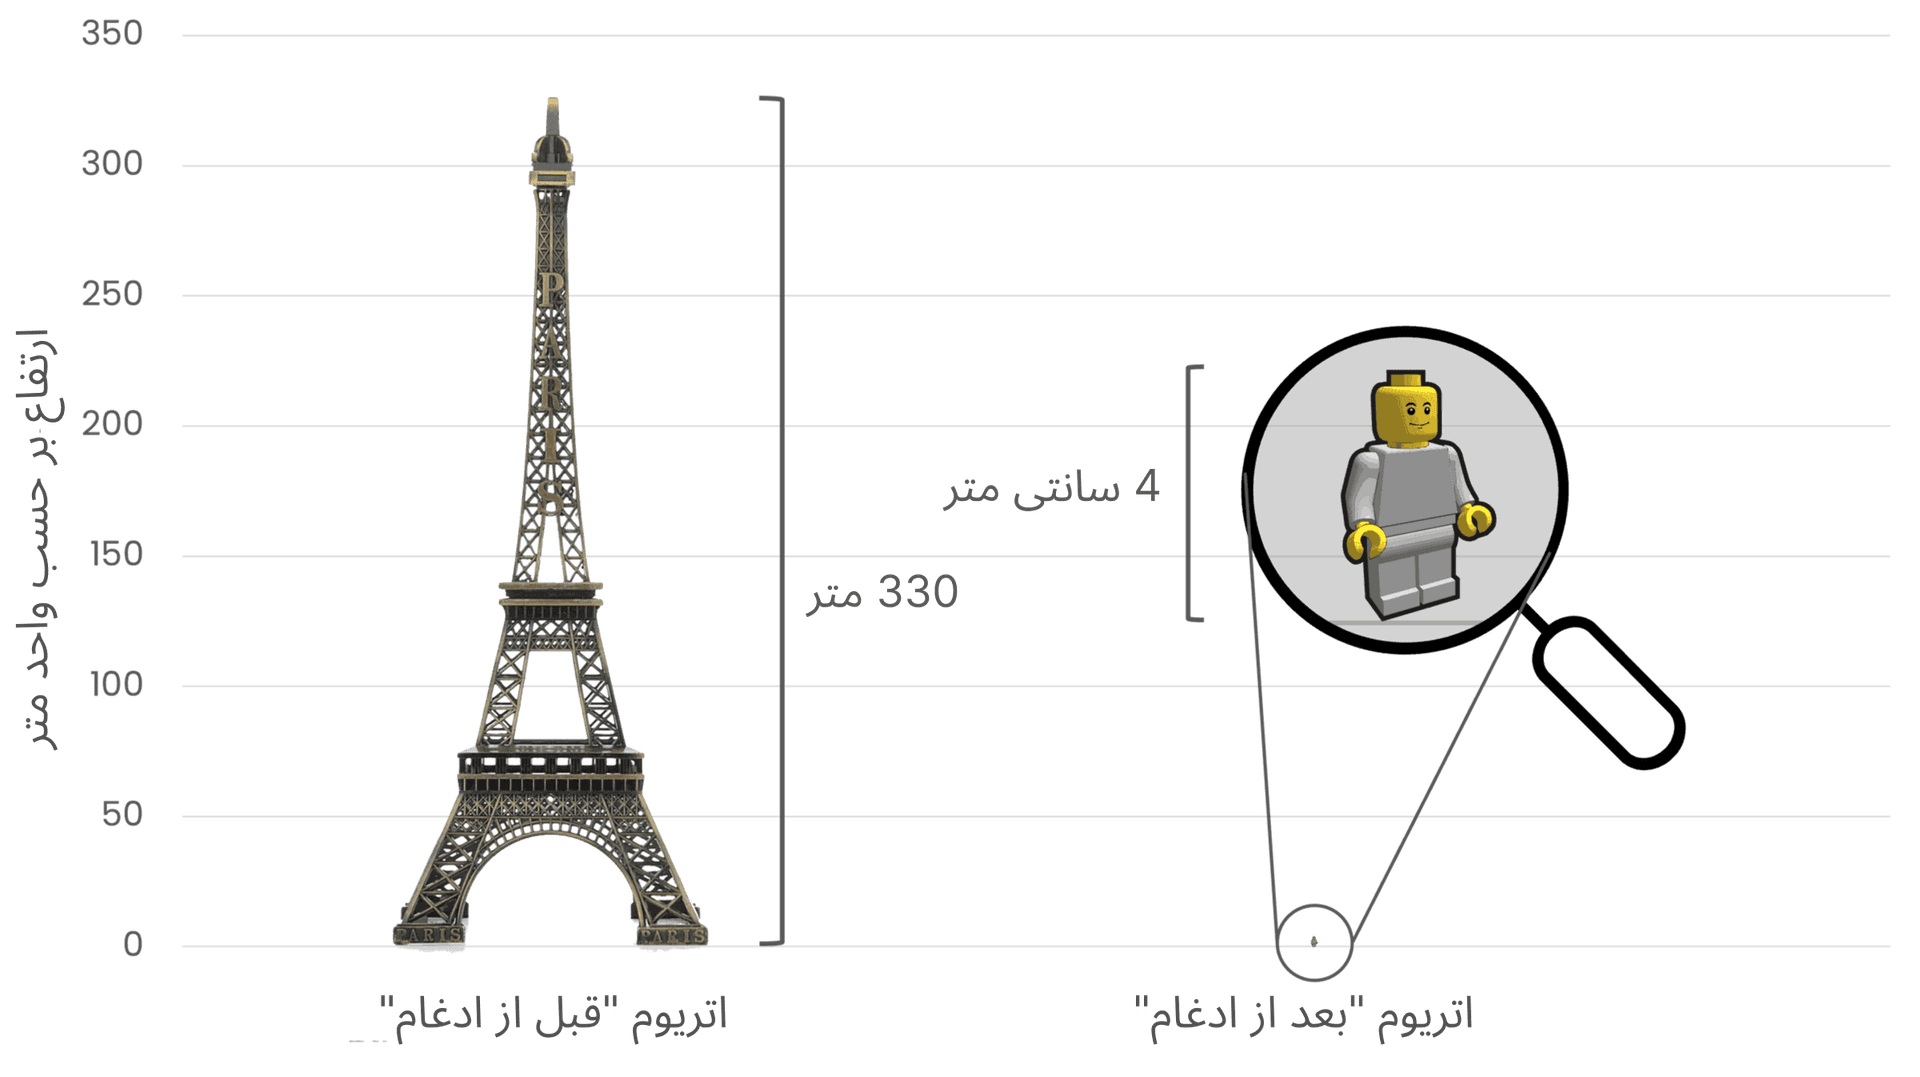 مقایسه مصرف انرژی اتریوم قبل و بعد از ادغام با استفاده از برج ایفل (330 متر ارتفاع) در سمت چپ برای سمبولیزه کردن مصرف انرژی بالا پیش از ادغام،‌ و یک شکل لگوی کوچک 4 سانتی‌متری در سمت راست به نشانه کاهش شدید مصرف انرژی پس از ادغام